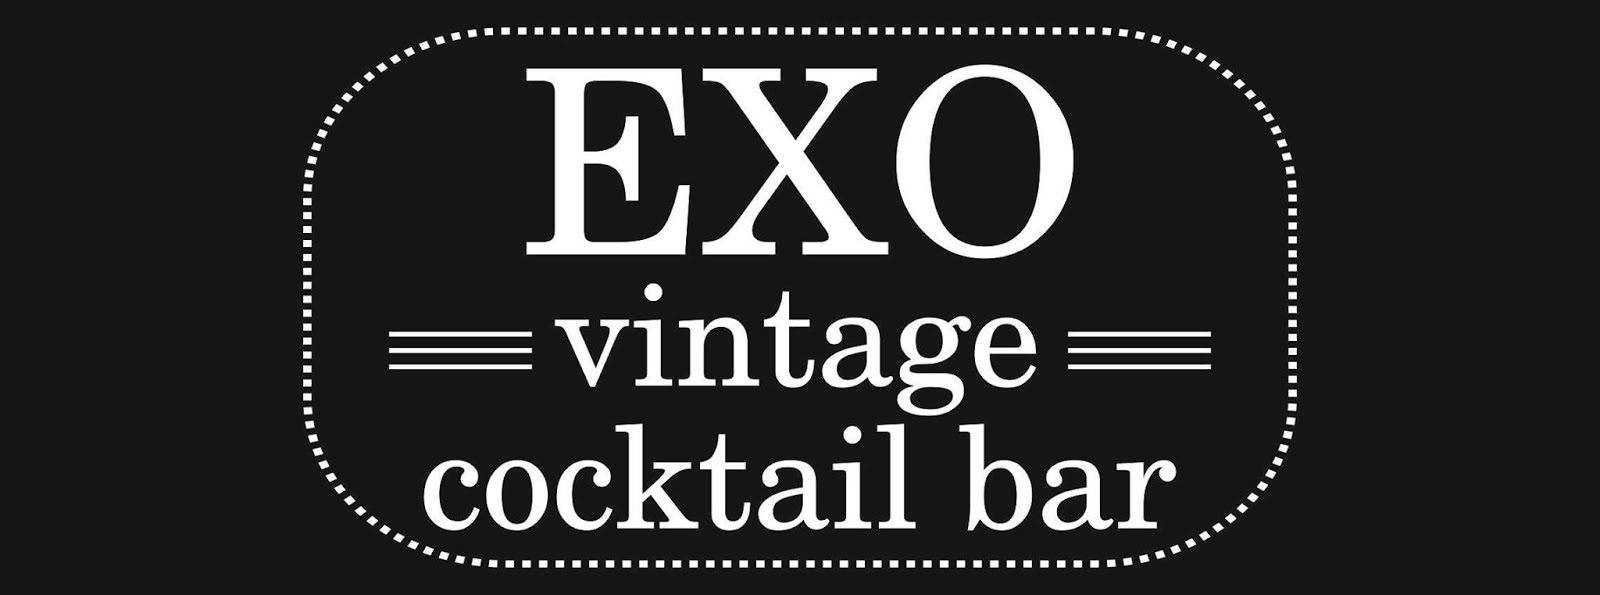 EXO vintage cocktail bar